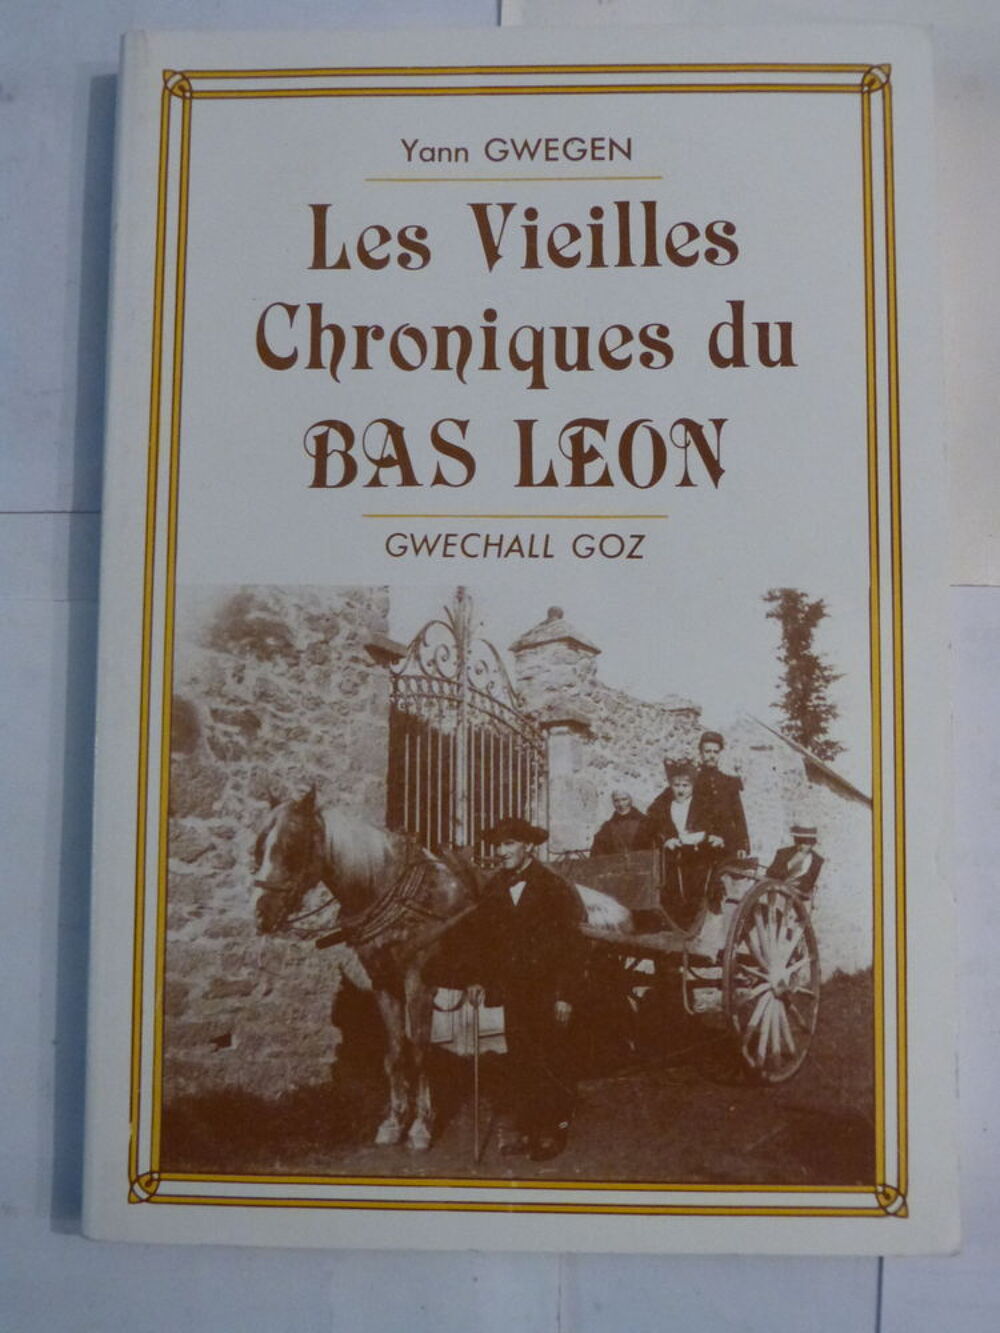 LIVRE BRETON - LES VIEILLES CHRONIQUES DU BAS LEON Livres et BD